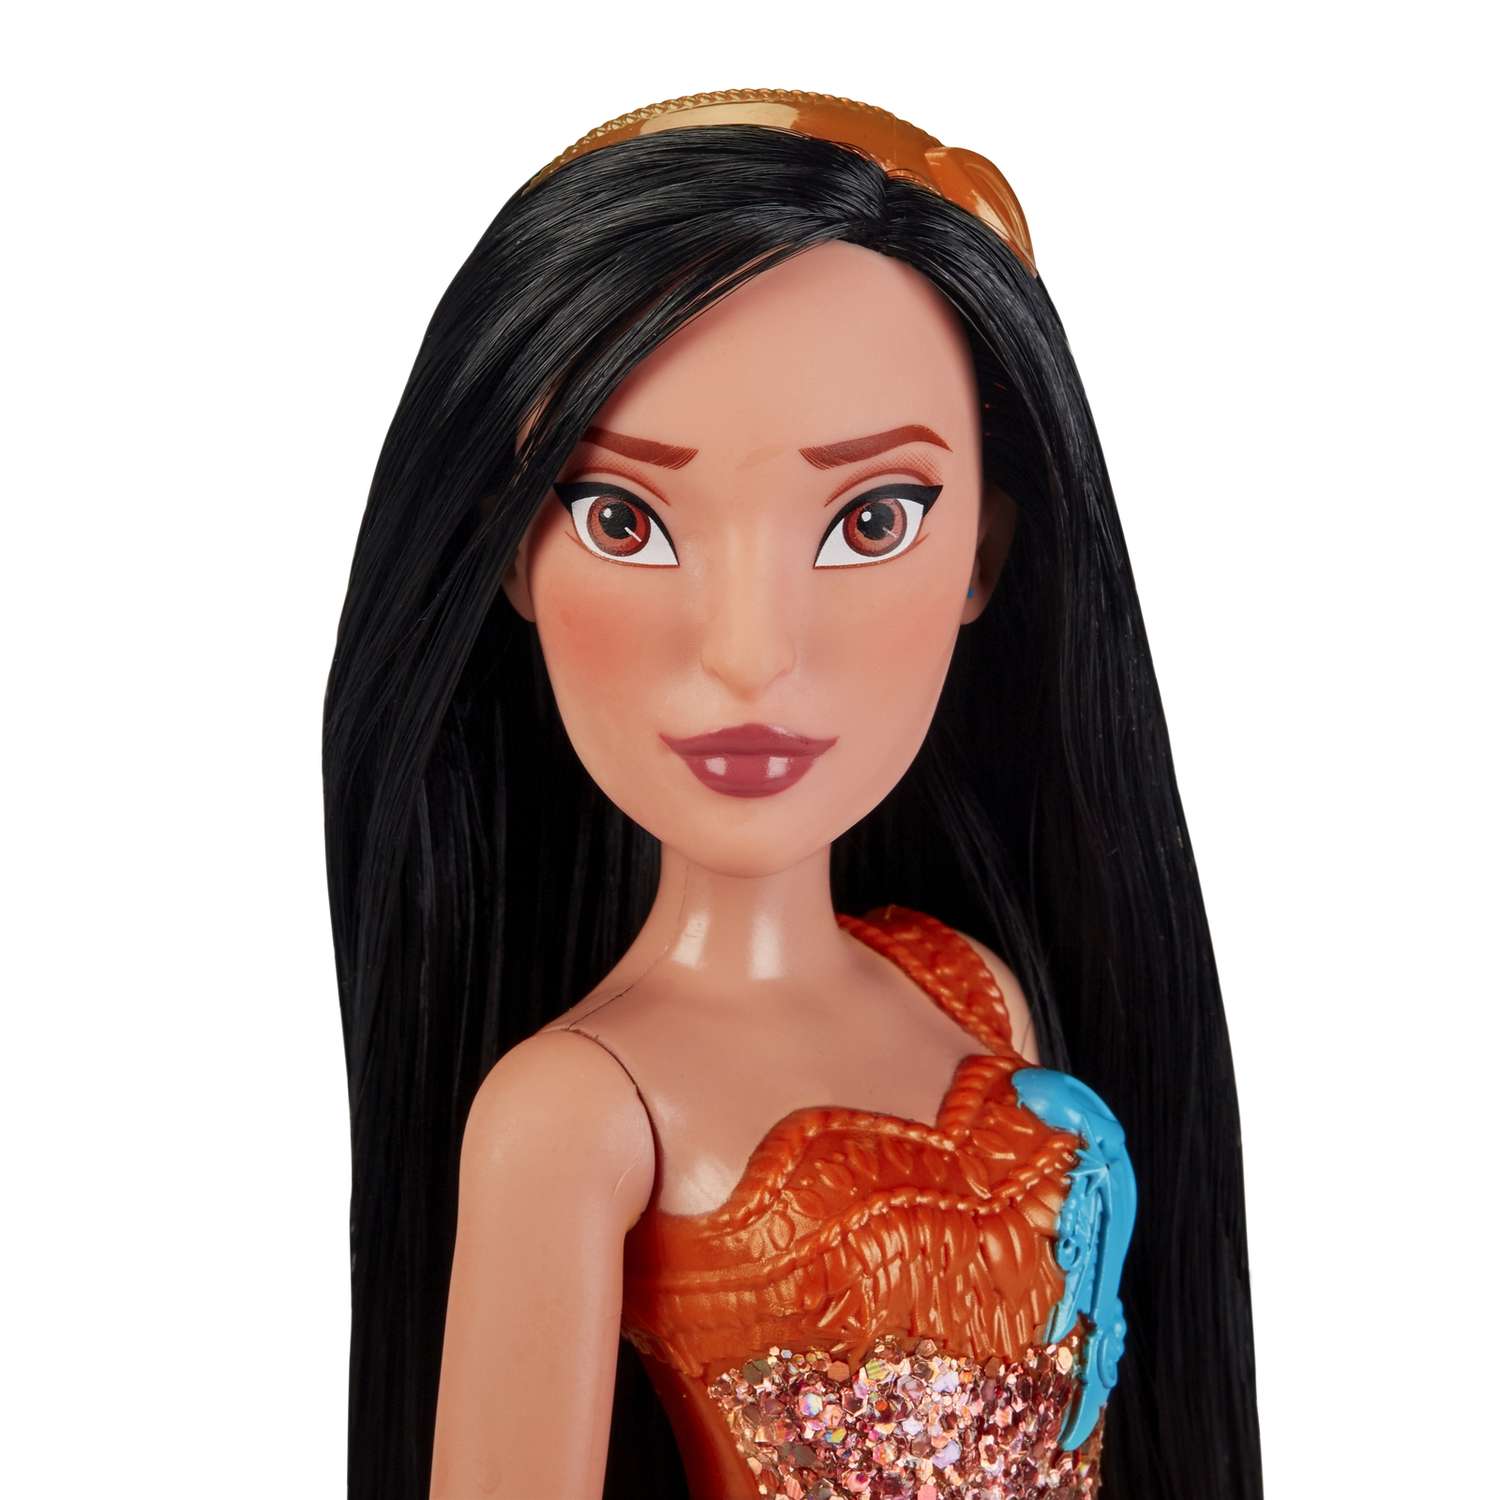 Кукла Disney Princess Hasbro C Покахонтас E4165EU4 E4022EU4 - фото 8